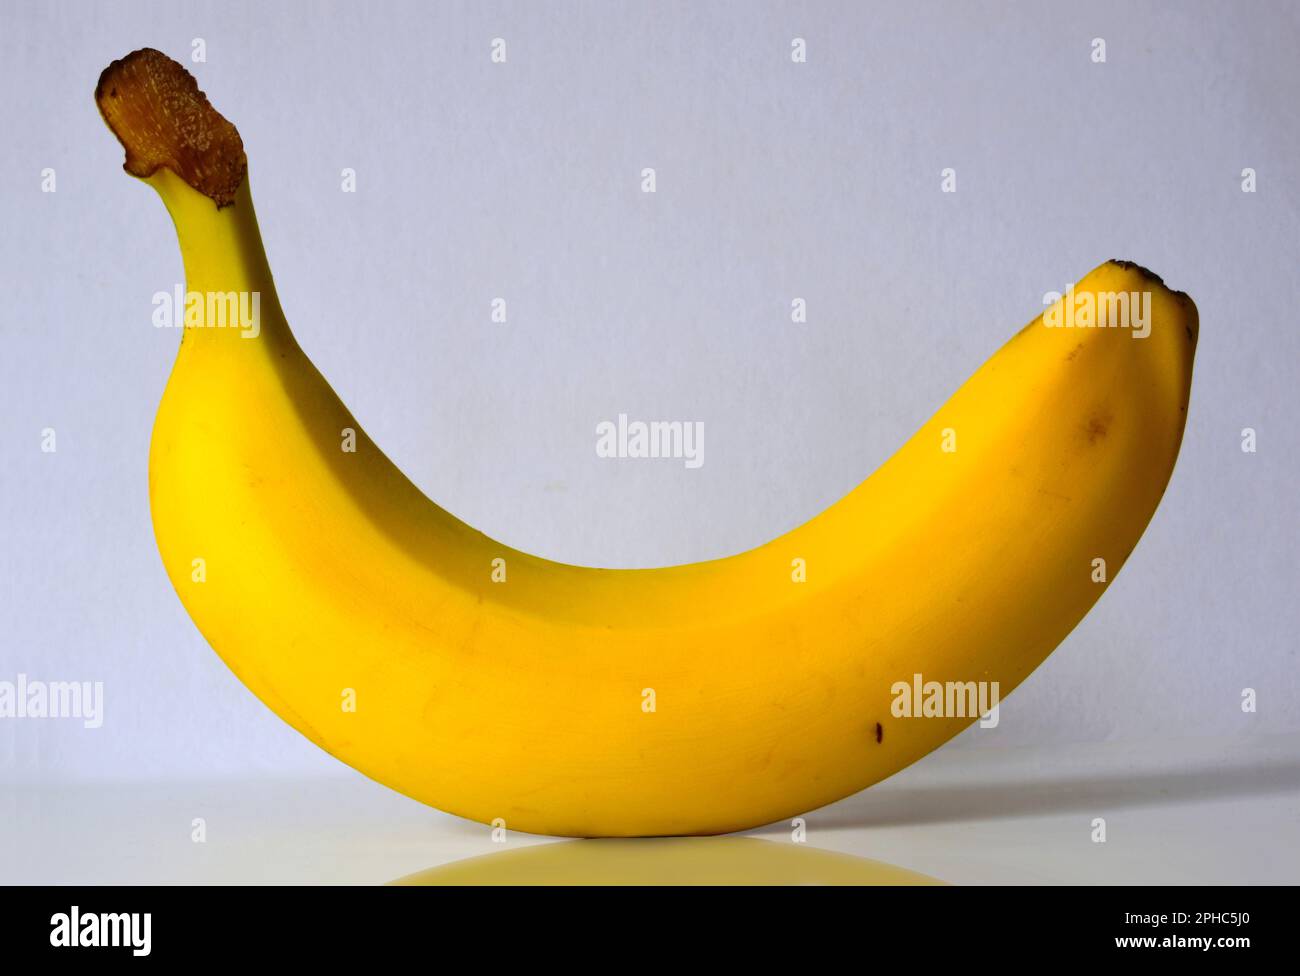 banana singola matura gialla isolata su superficie bianca e fondo. riflessione e ombra. immagine astratta. ancora la vita e l'arte biologica e sana Foto Stock